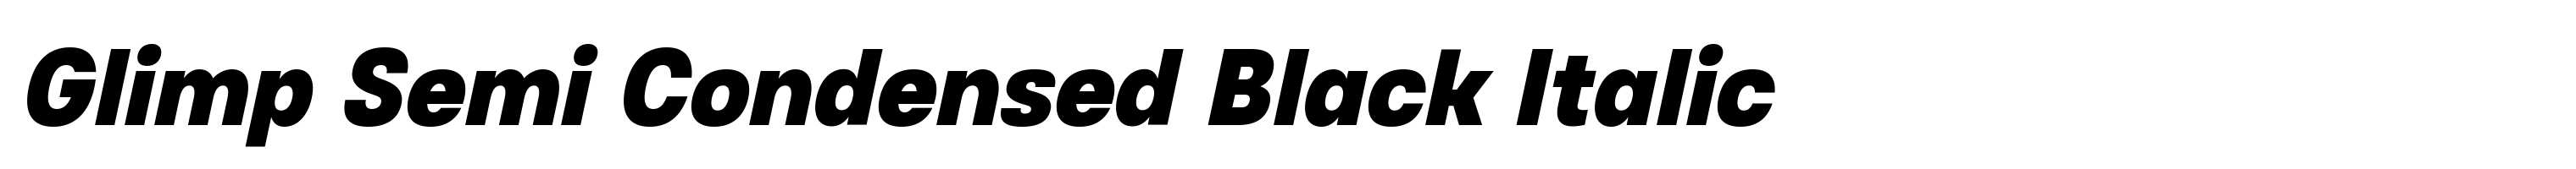 Glimp Semi Condensed Black Italic